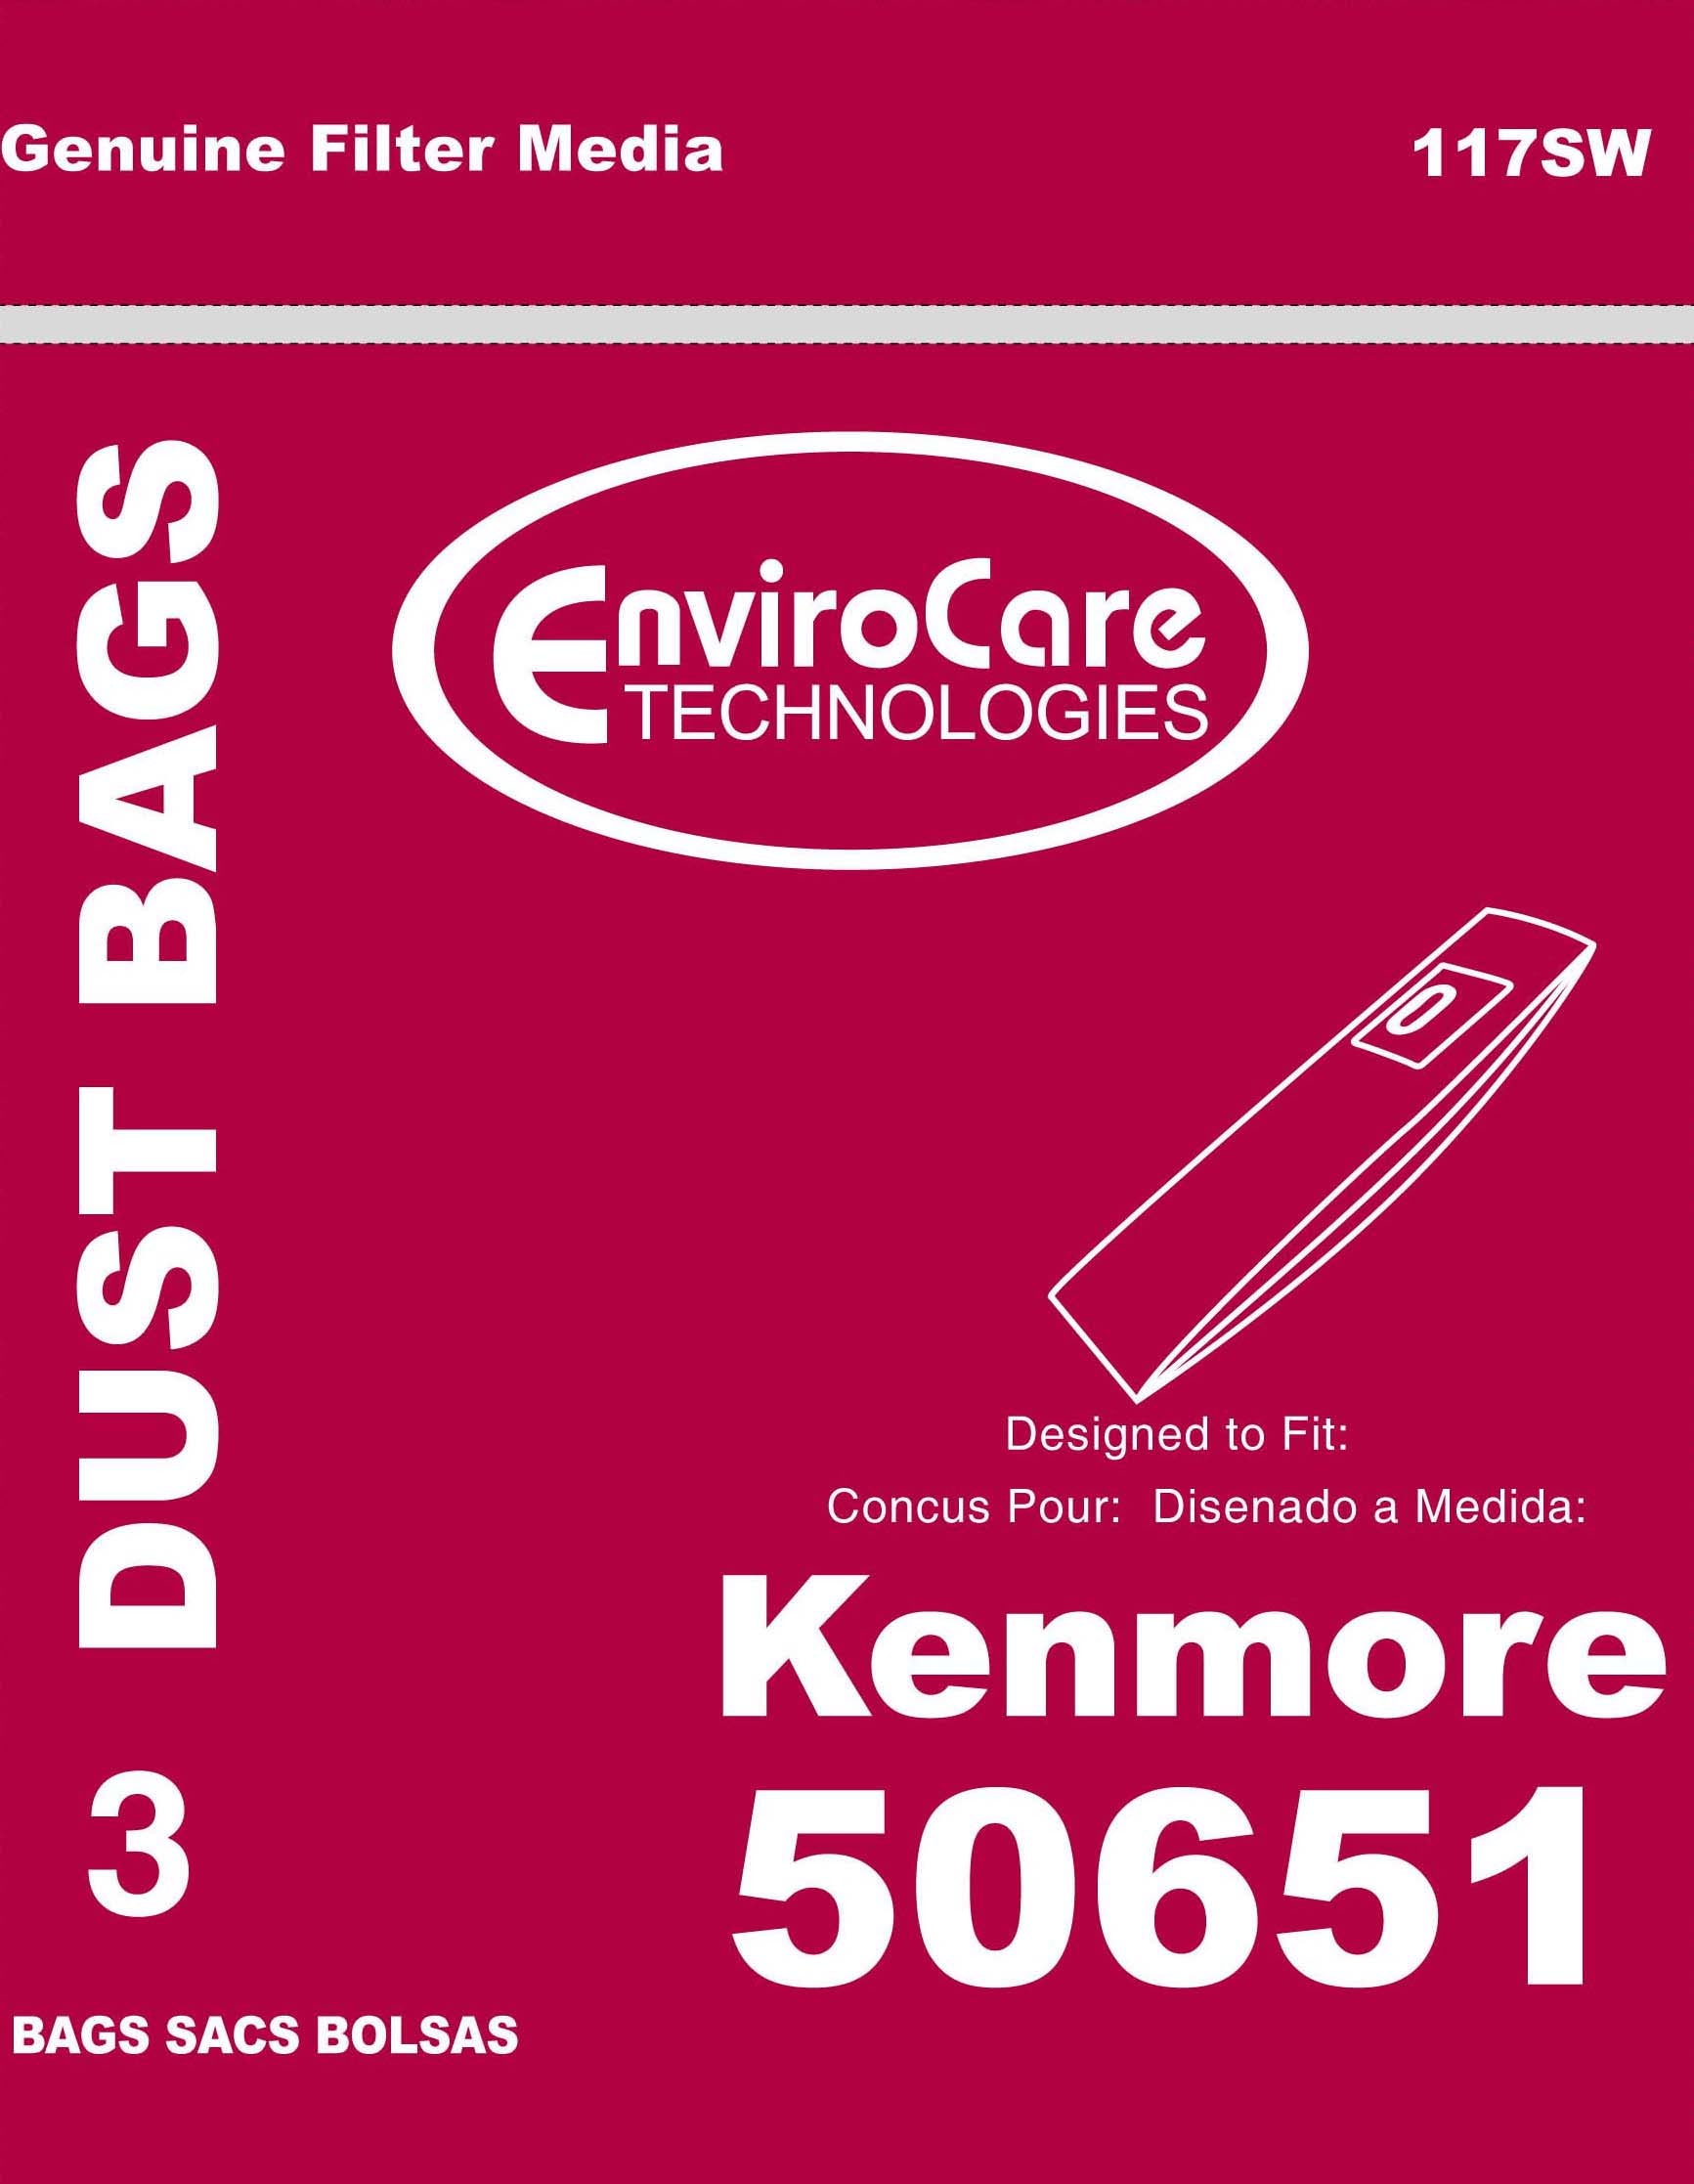 Kenmore, Kenmore 50651 Bags